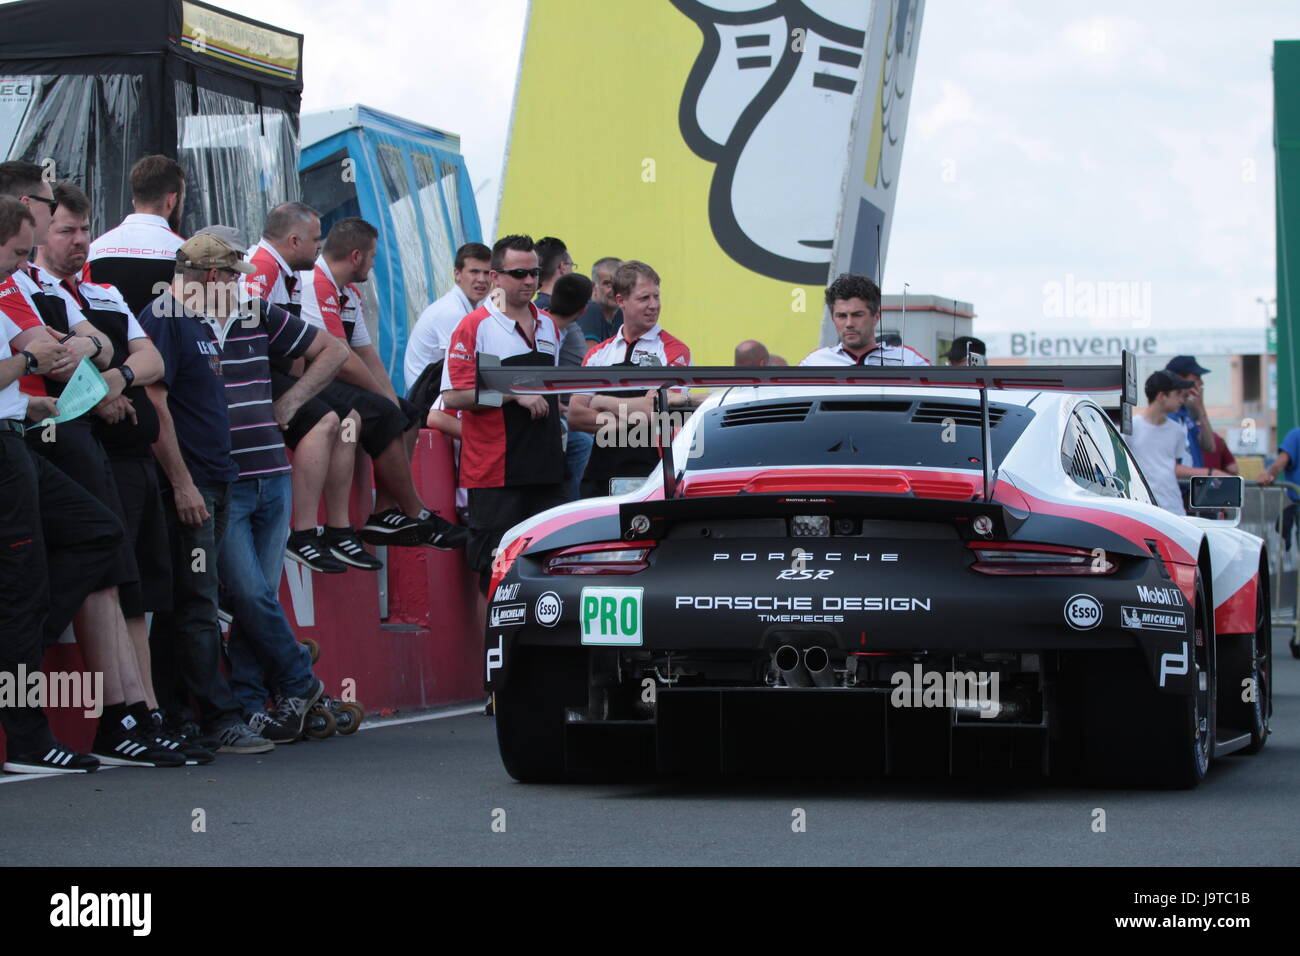 Le Mans, France. 2 juin, 2017. Porsche GT Team voiture Porsche 911 RSR n° 91 à pitline de circuit de la Sarthe en France à l'époque de 24 Heures du Mans 2017 jours d'essai. Dimitry Lyubichev/Alamy Live News Banque D'Images